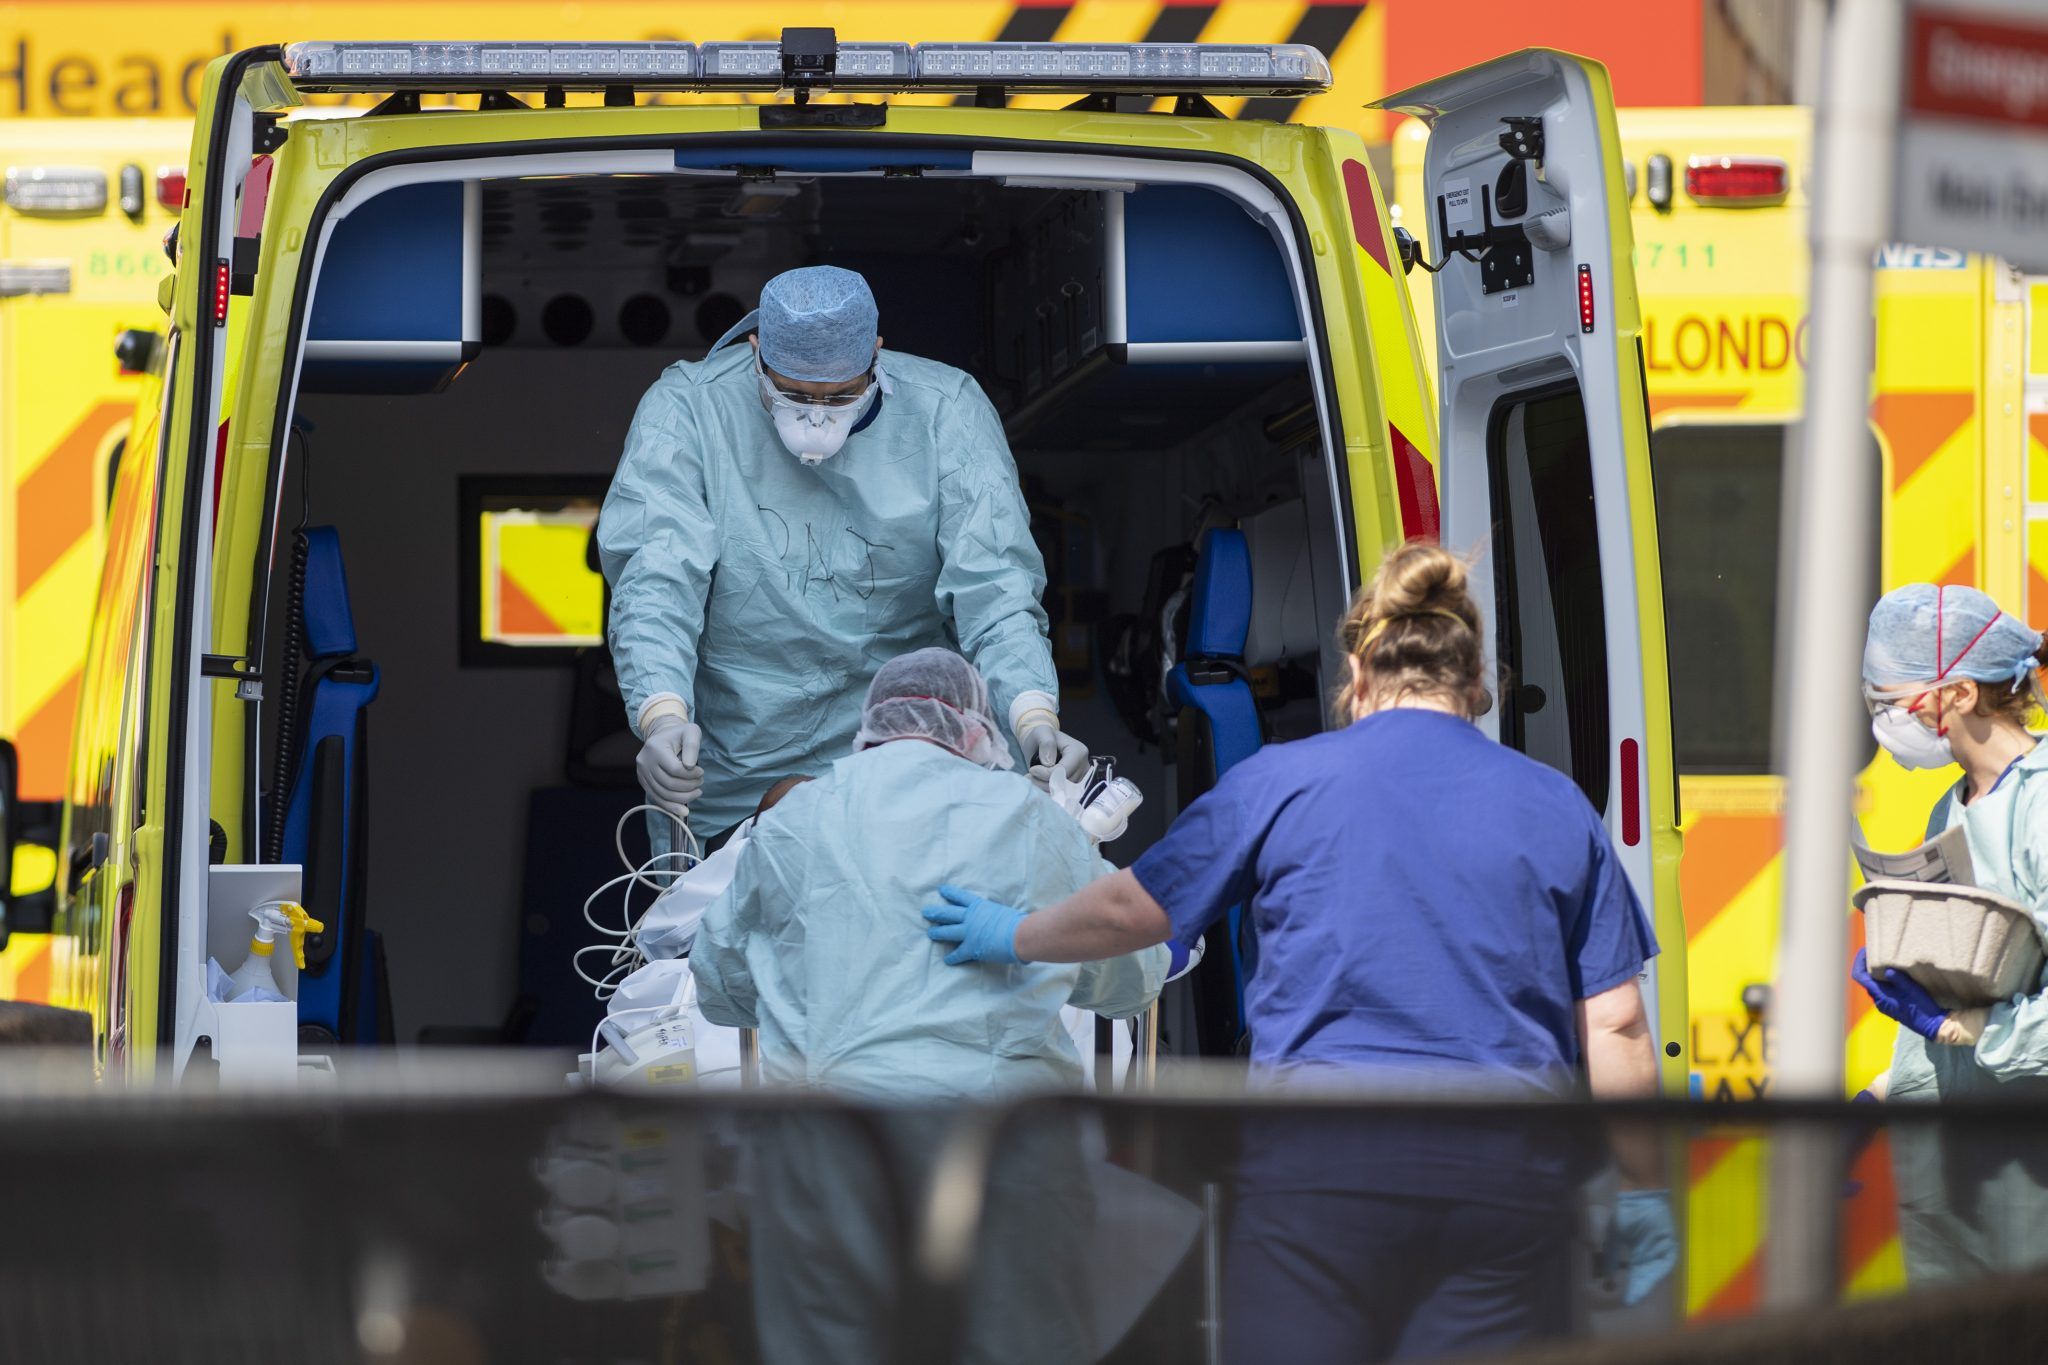 کارگران بیمارستان در PPE بیمار Covid را به داخل آمبولانس می برند